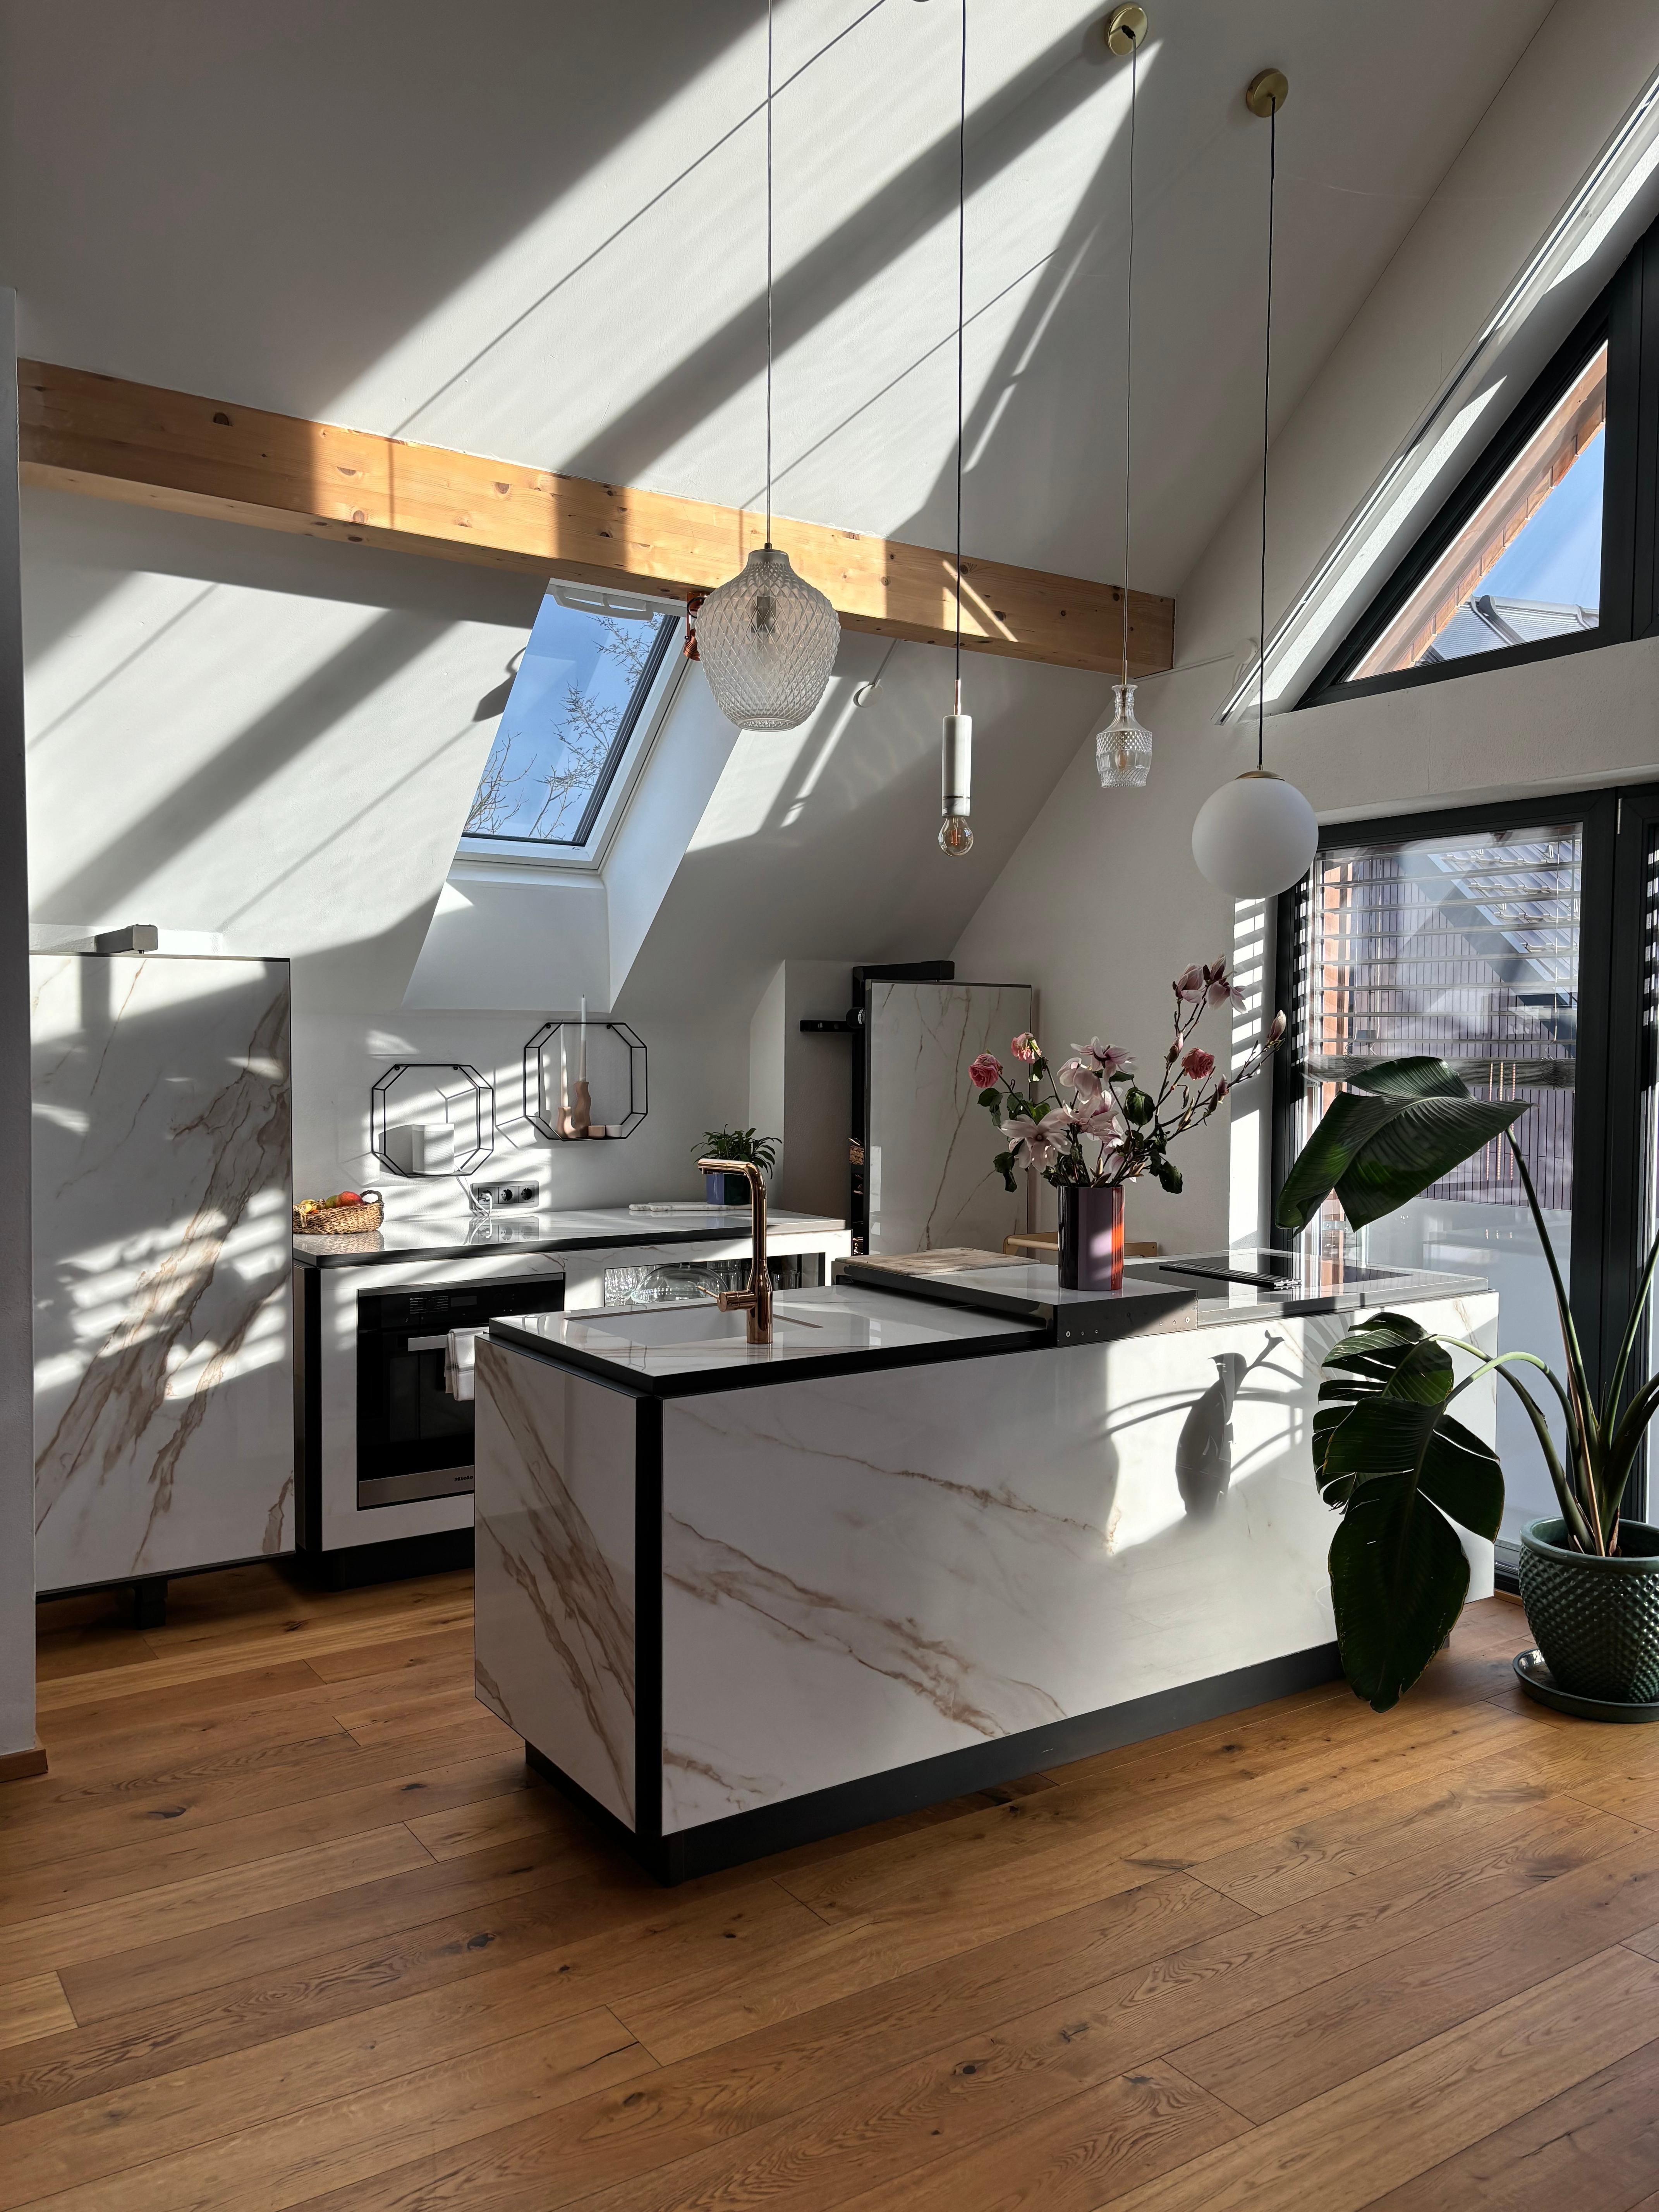 Unsere Küche. Großzügige Fenster bringen viel Sonnenlicht in die Küche, und die warme Atmosphäre ist unbezahlbar. 